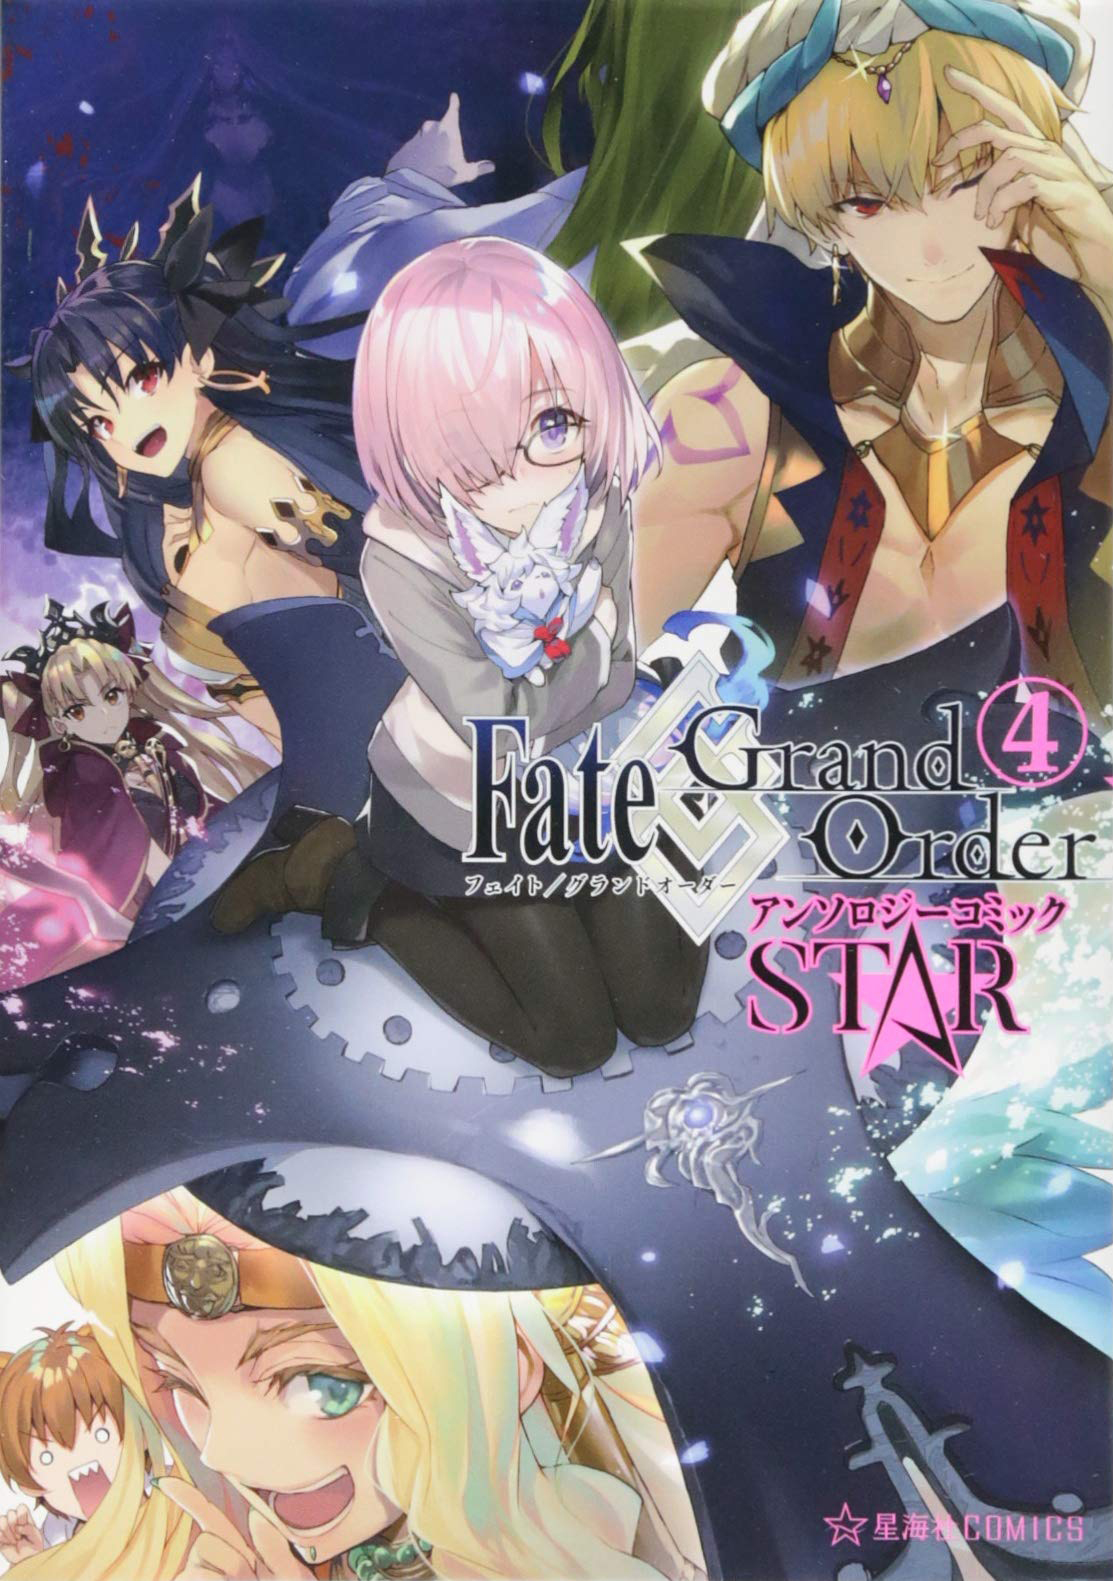 Fate Grand Order 漫畫精選集 STAR 4.jpg